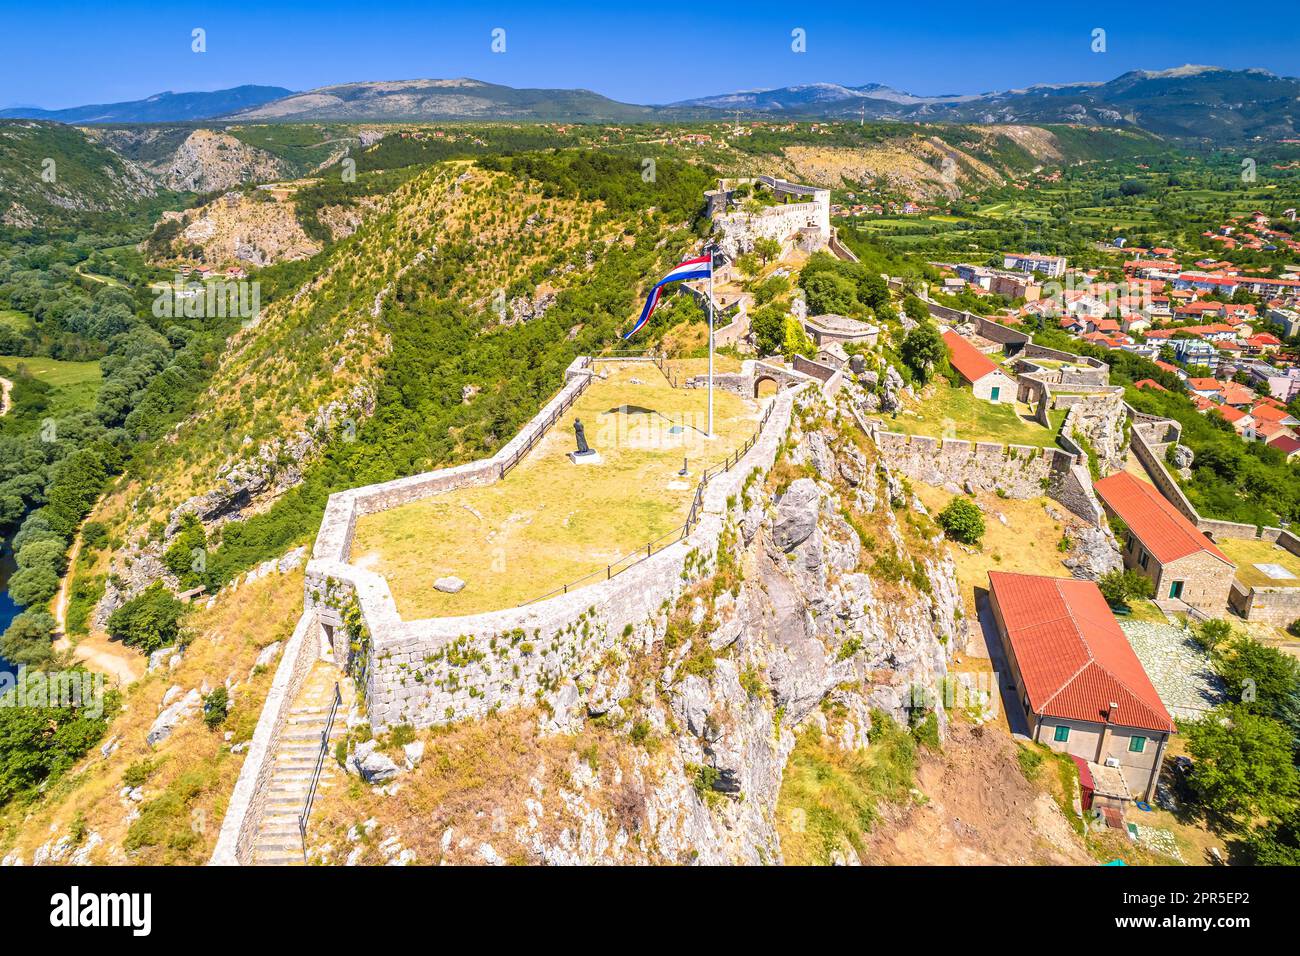 Die Festung Knin bietet einen unvergleichlichen Blick auf den Fluss Krka, die zweitgrößte Festung in Kroatien Stockfoto